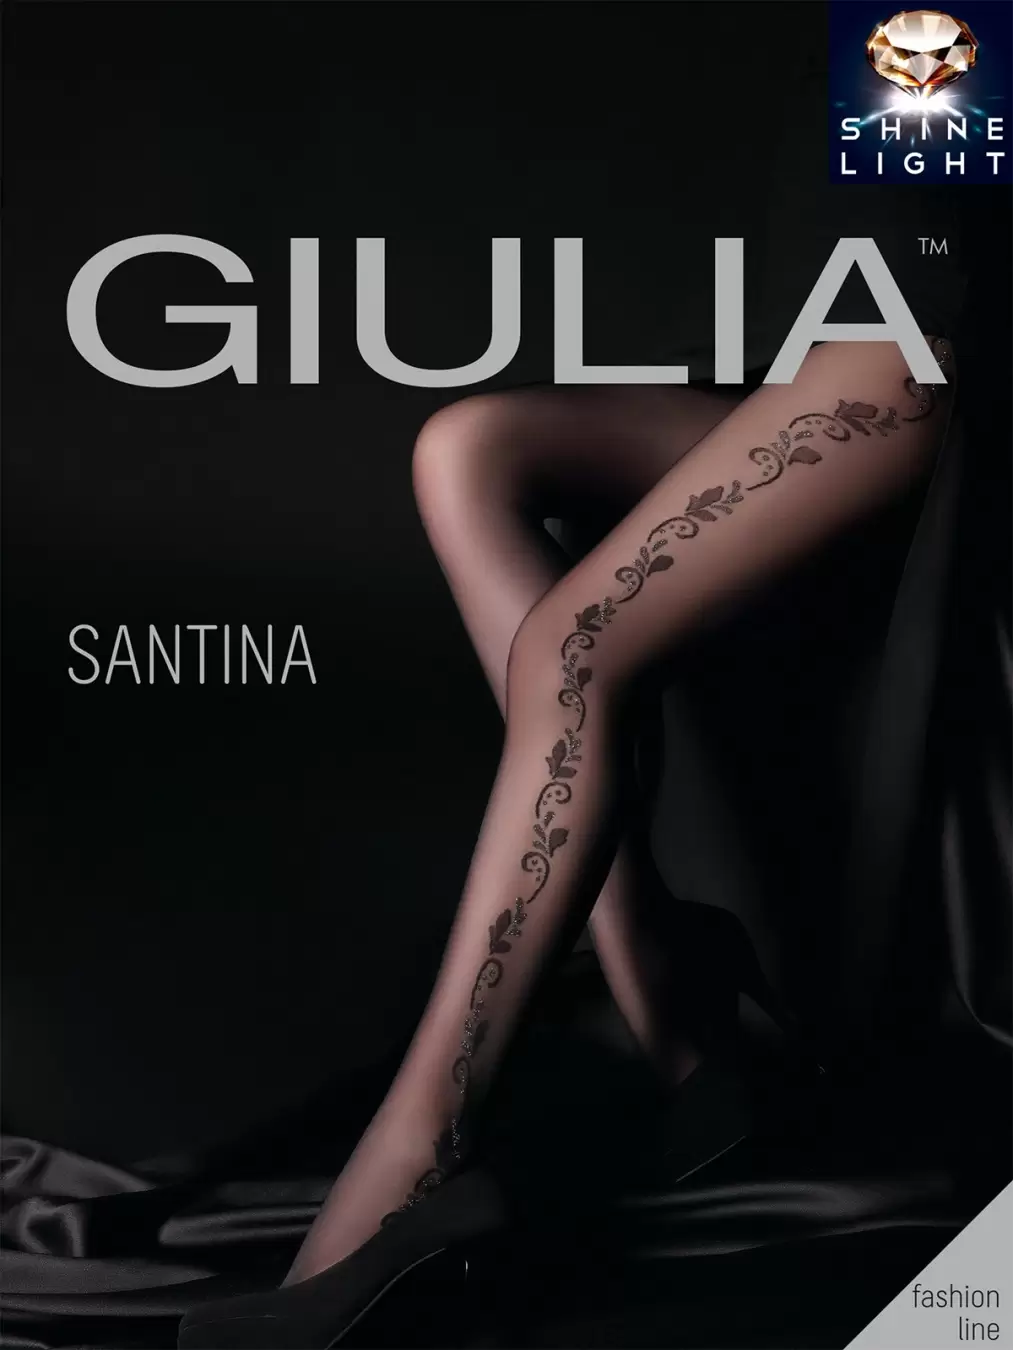 Giulia SANTINA 07, фантазийные колготки купить недорого в интернет-магазине   Москва